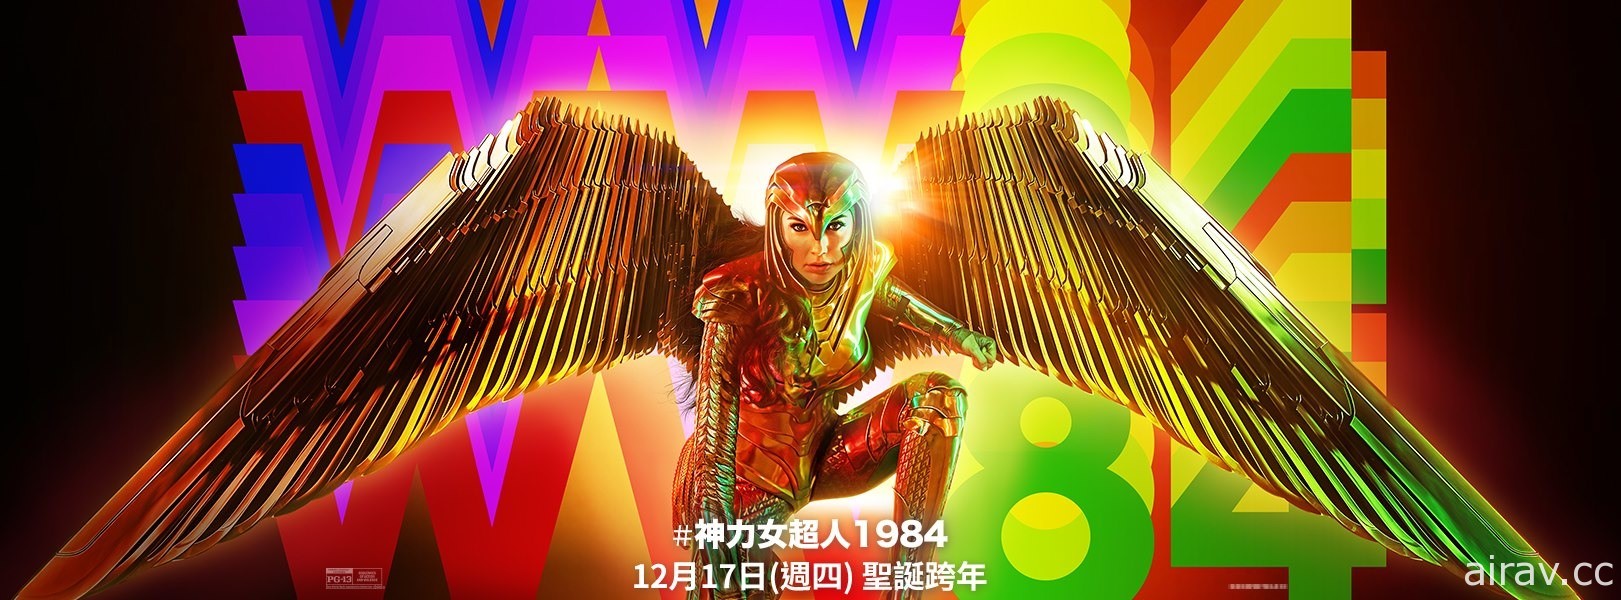 《神力女超人 1984》台灣定檔 12 月 17 日 北美將以戲院及影音串流兩種模式上映